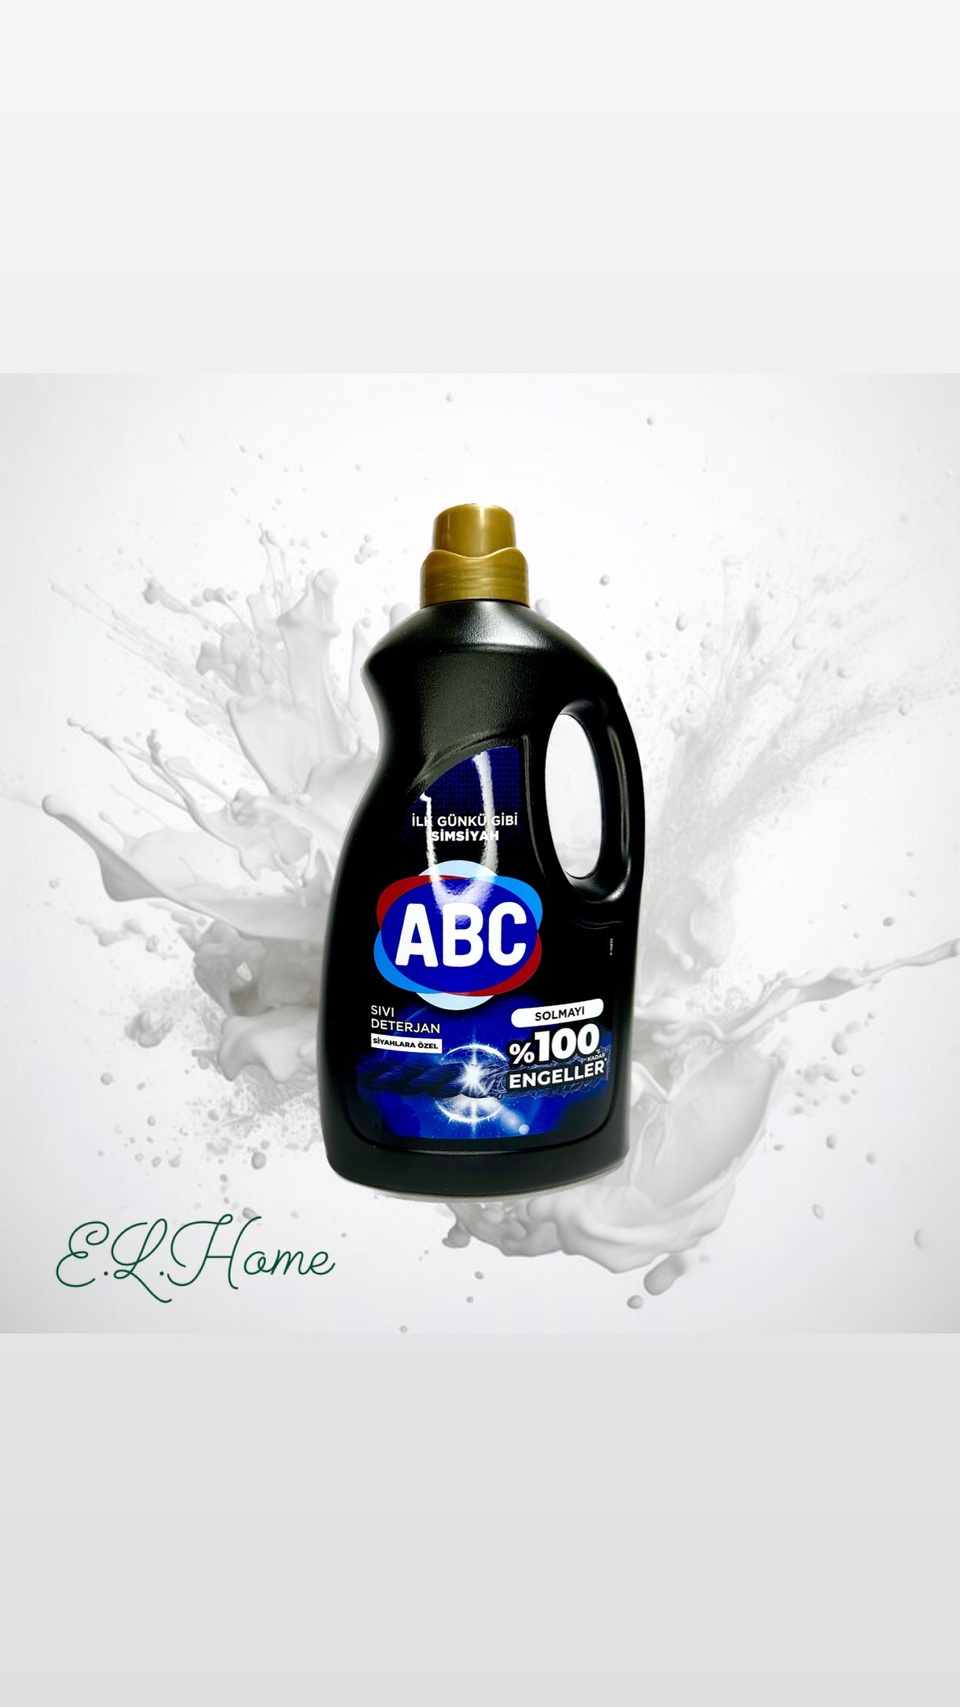 Гель для стирки черного белья ABC 3л - 600 ₽, заказать онлайн.